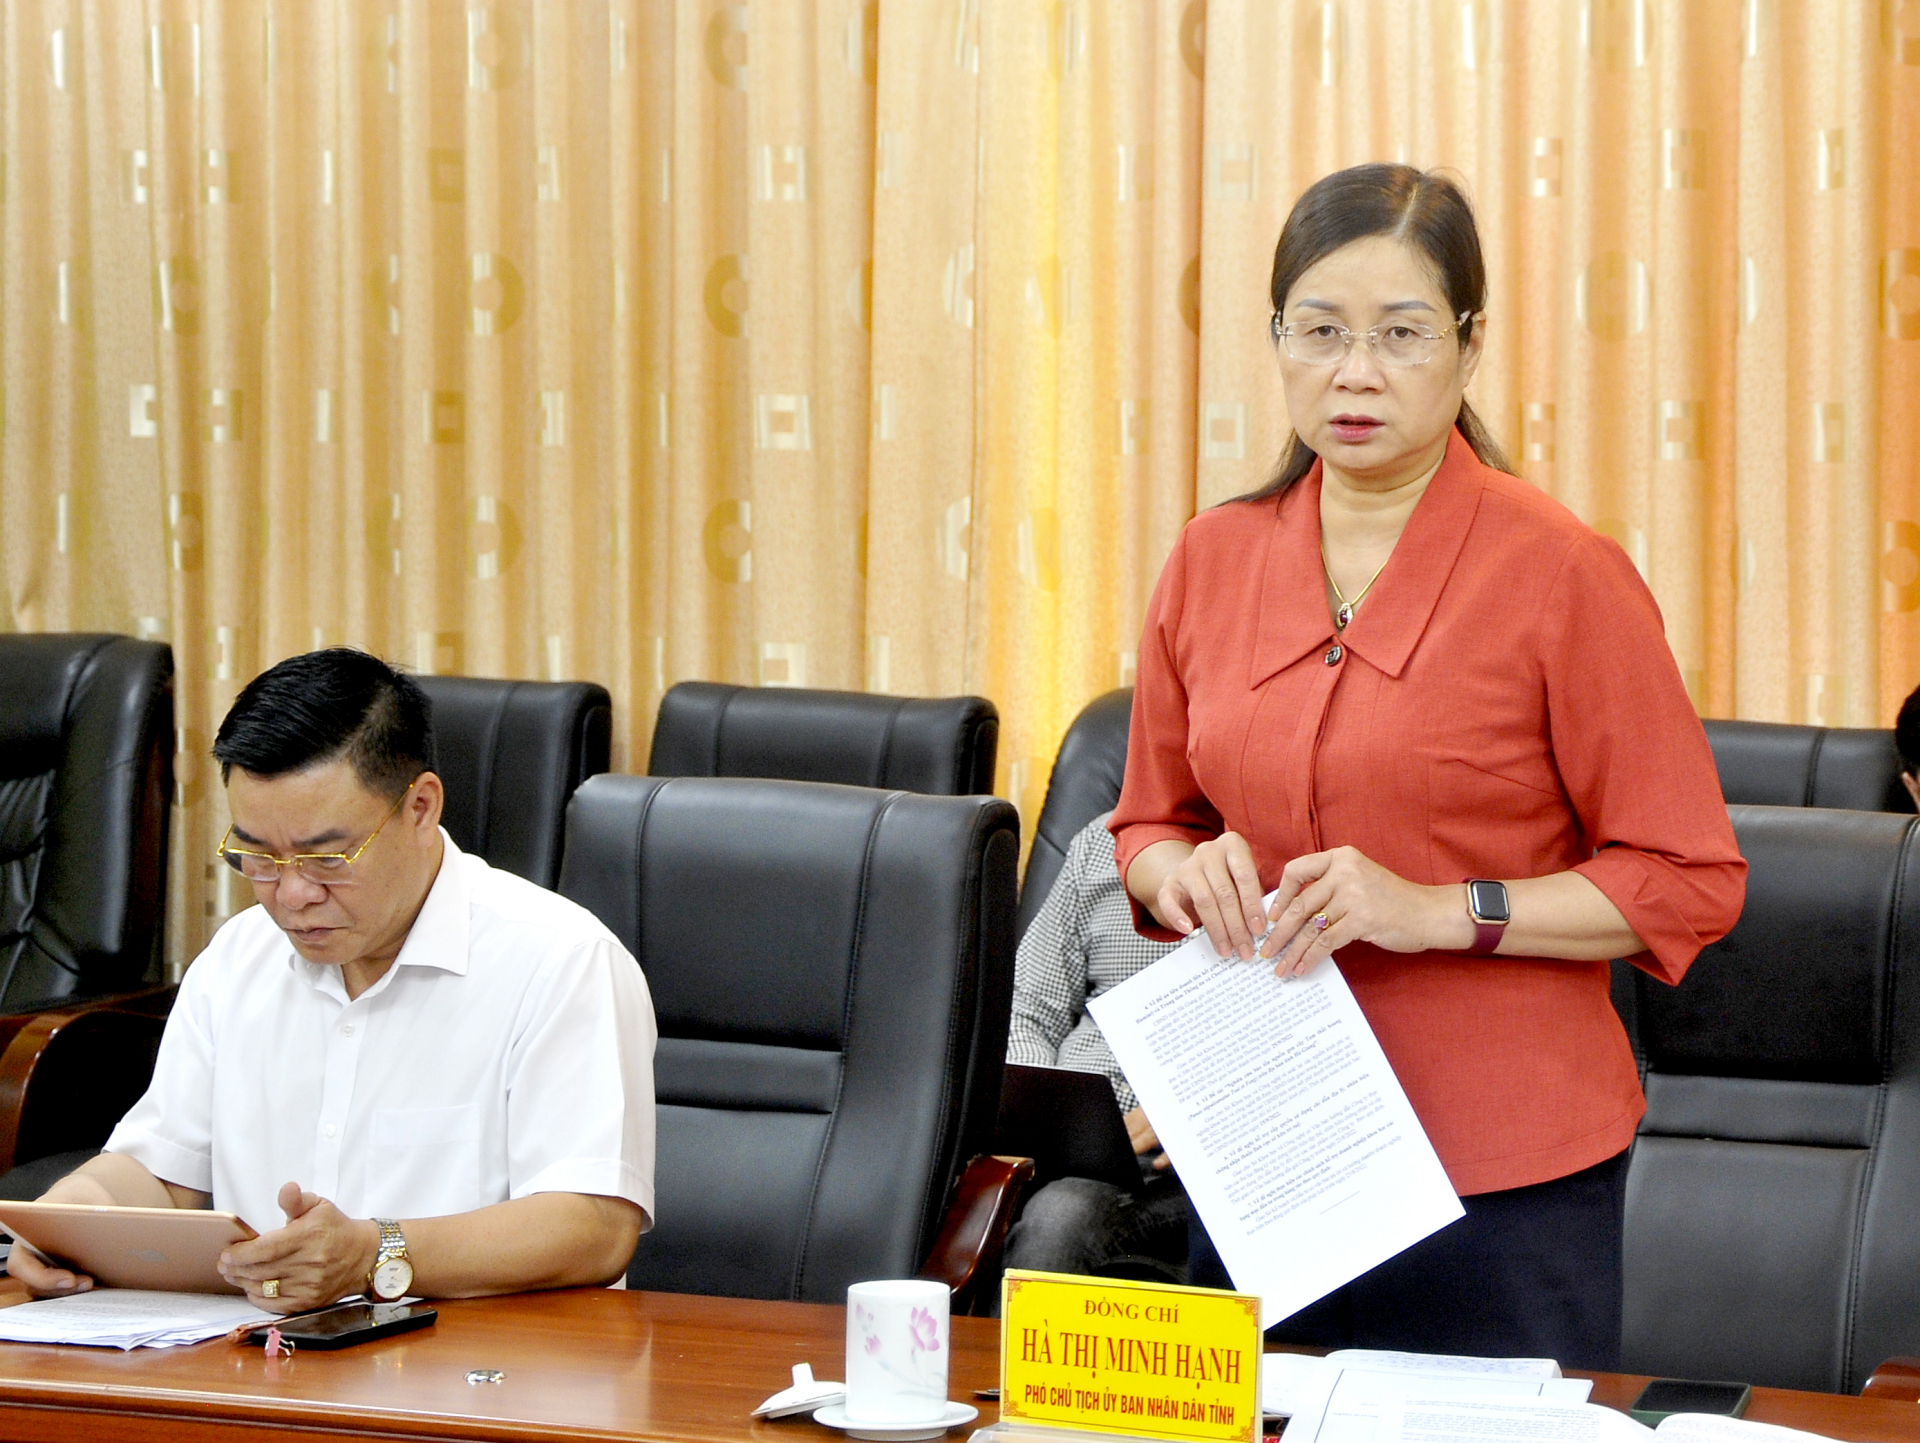 Phó Chủ tịch UBND tỉnh Hà Thị Minh Hạnh đề nghị phía Viện LN&PTBV triển khai các bước thủ tục đầu tư theo quy định; thống nhất tài sản, phương án thực hiện để triển khai một cách đồng bộ.